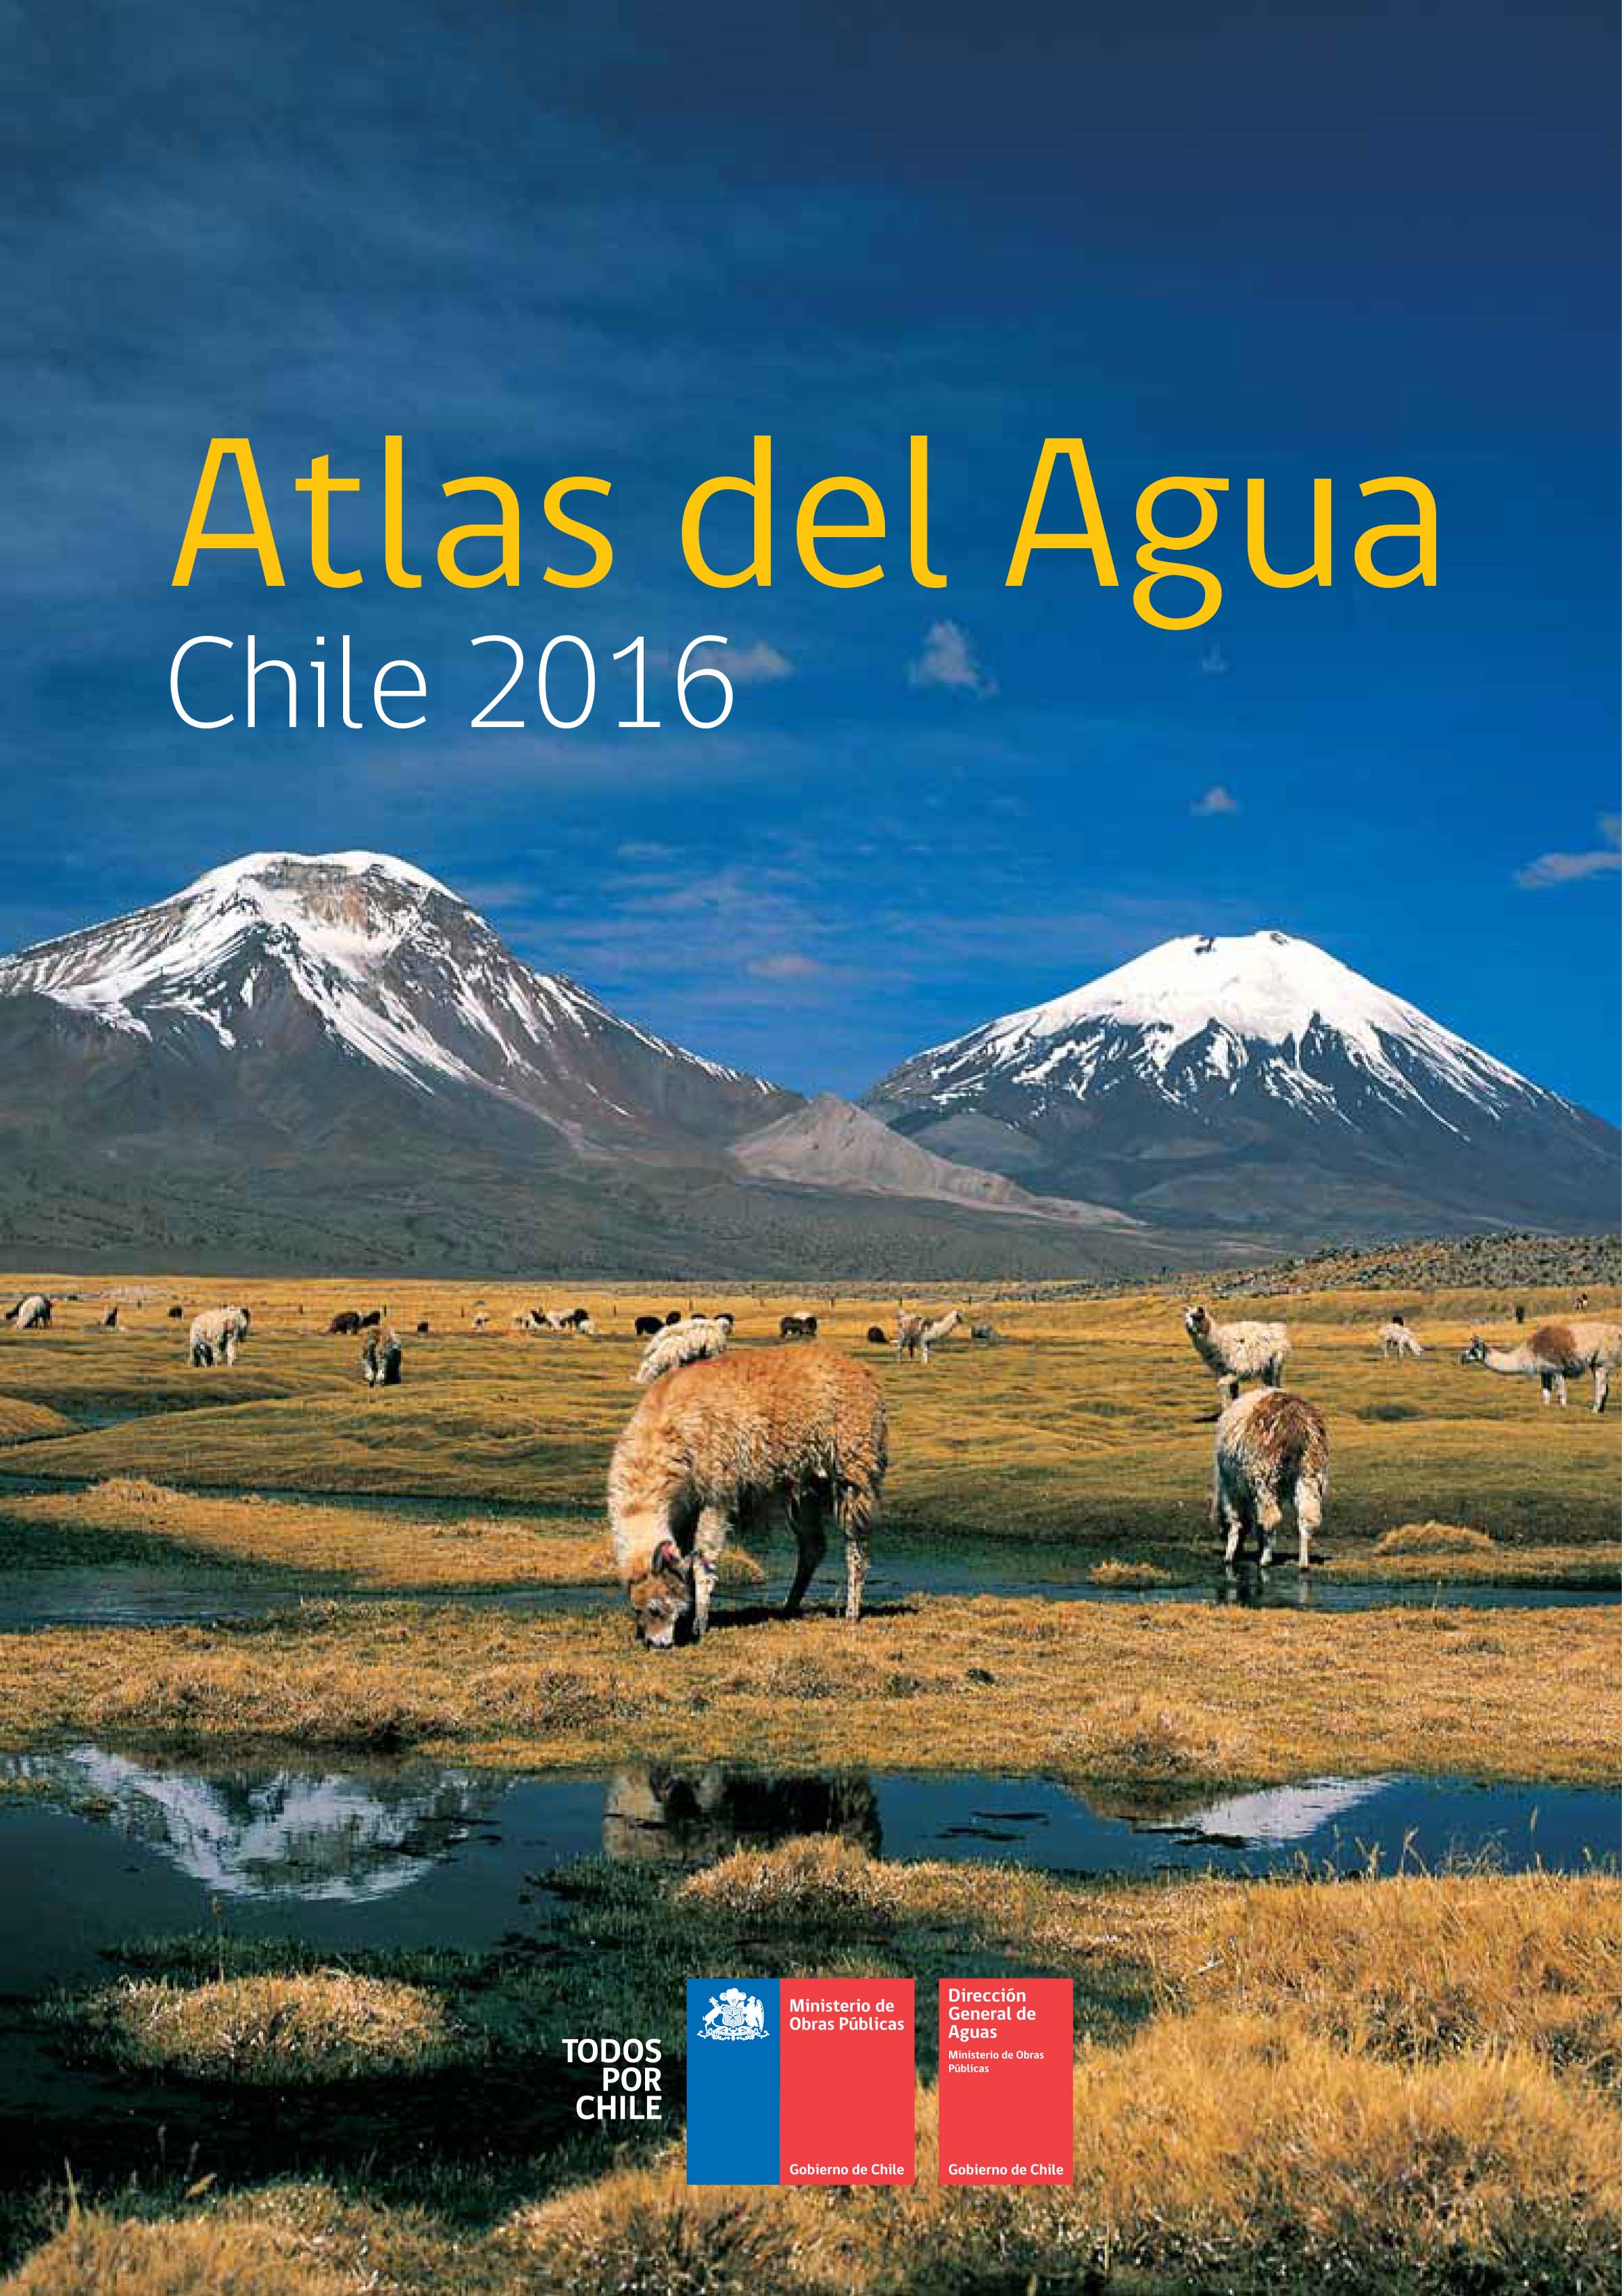 Atlas del Agua - 
Chile 2016